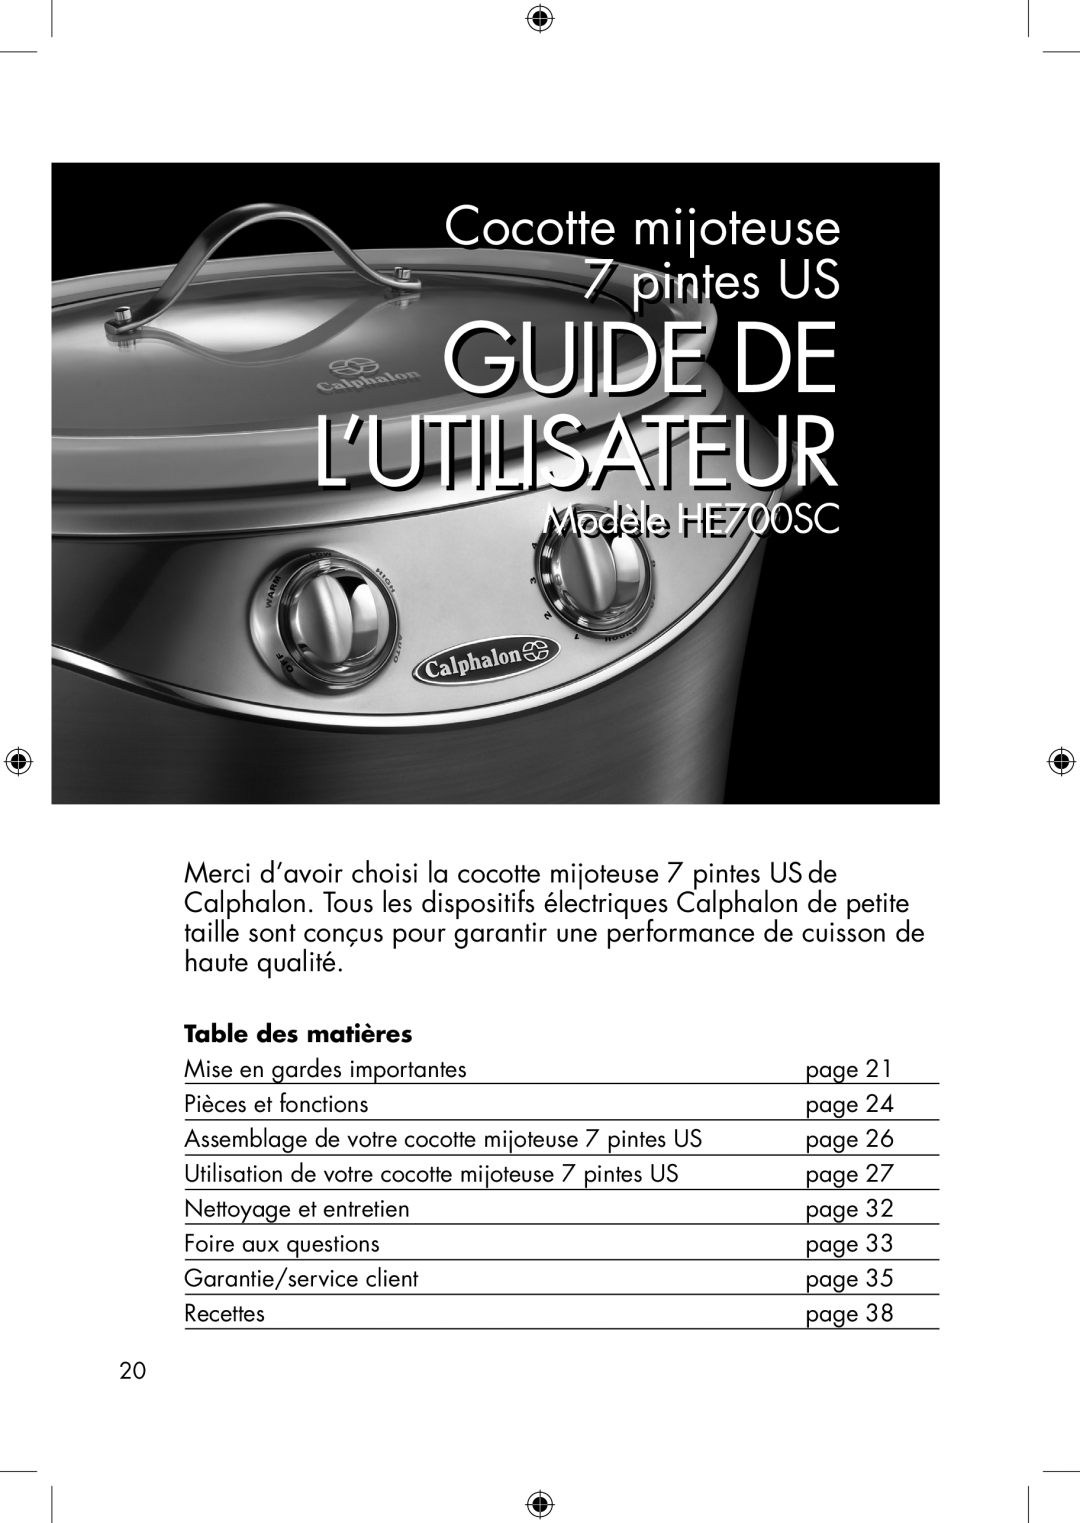 Calphalon manual Modèlele HE700SC, Guide De L’Utilisateur, Cocottette mijoteuseij t 7 pintesi t US, Table des matières 